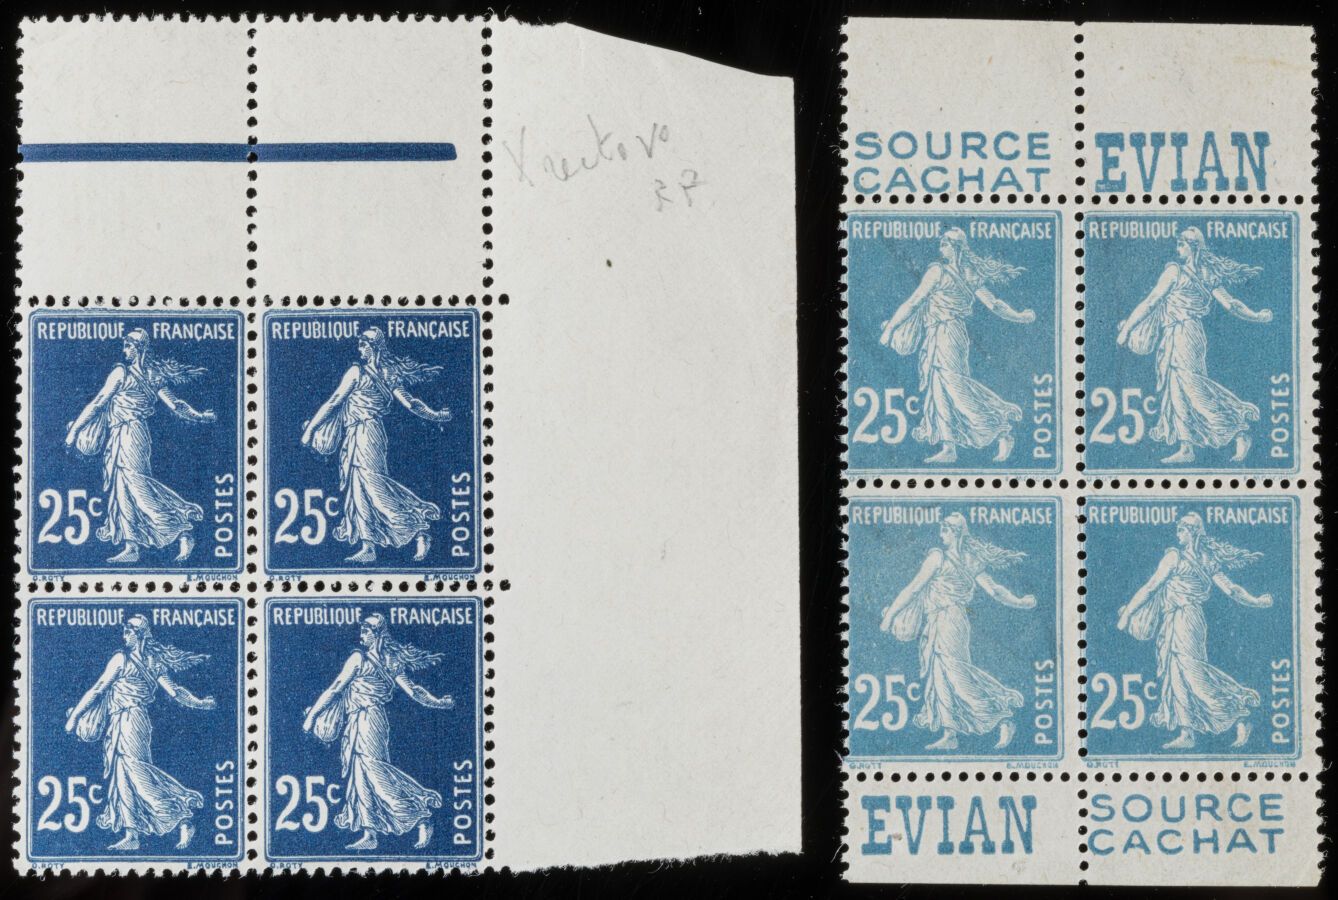 Null Francobollo N°140s - Blocco di 4 francobolli con stampa Recto-verso + Varie&hellip;